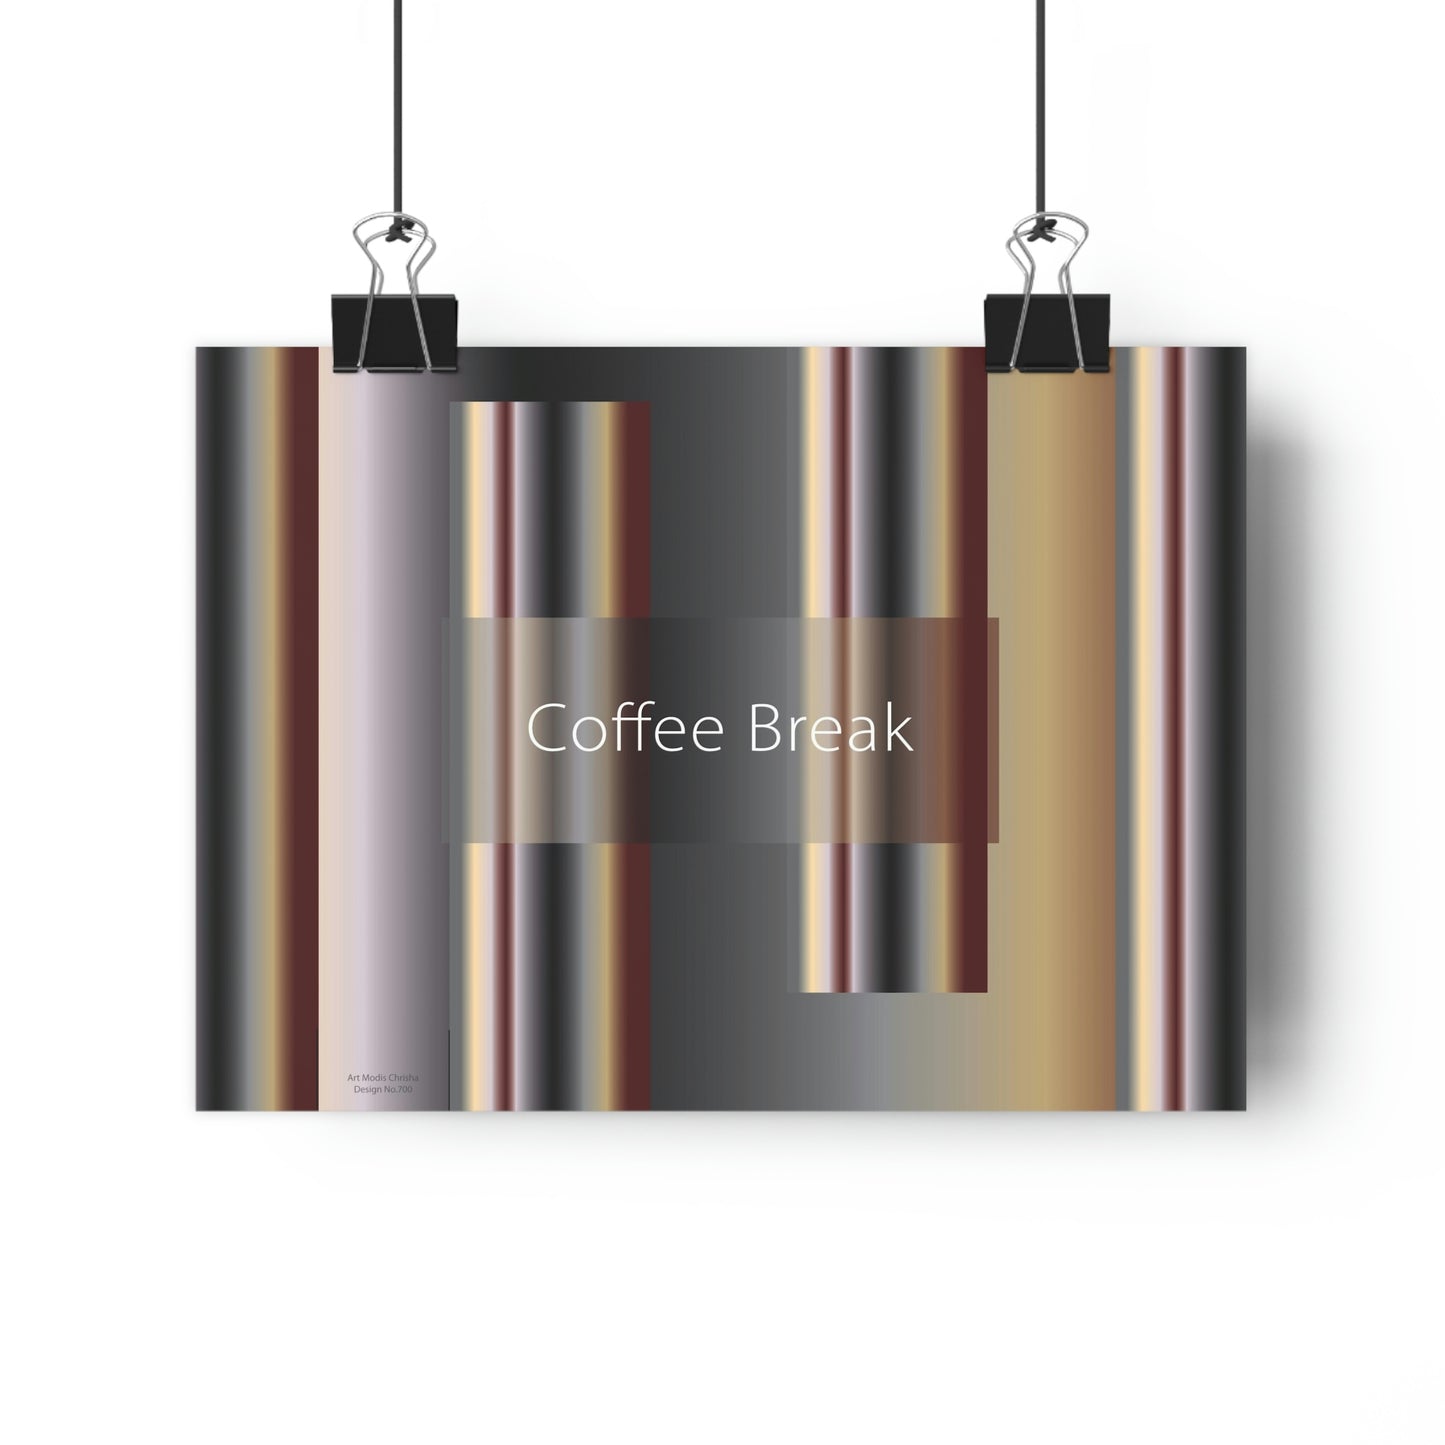 Giclée Art Print 11" x 8" Coffee Break, Design No.700